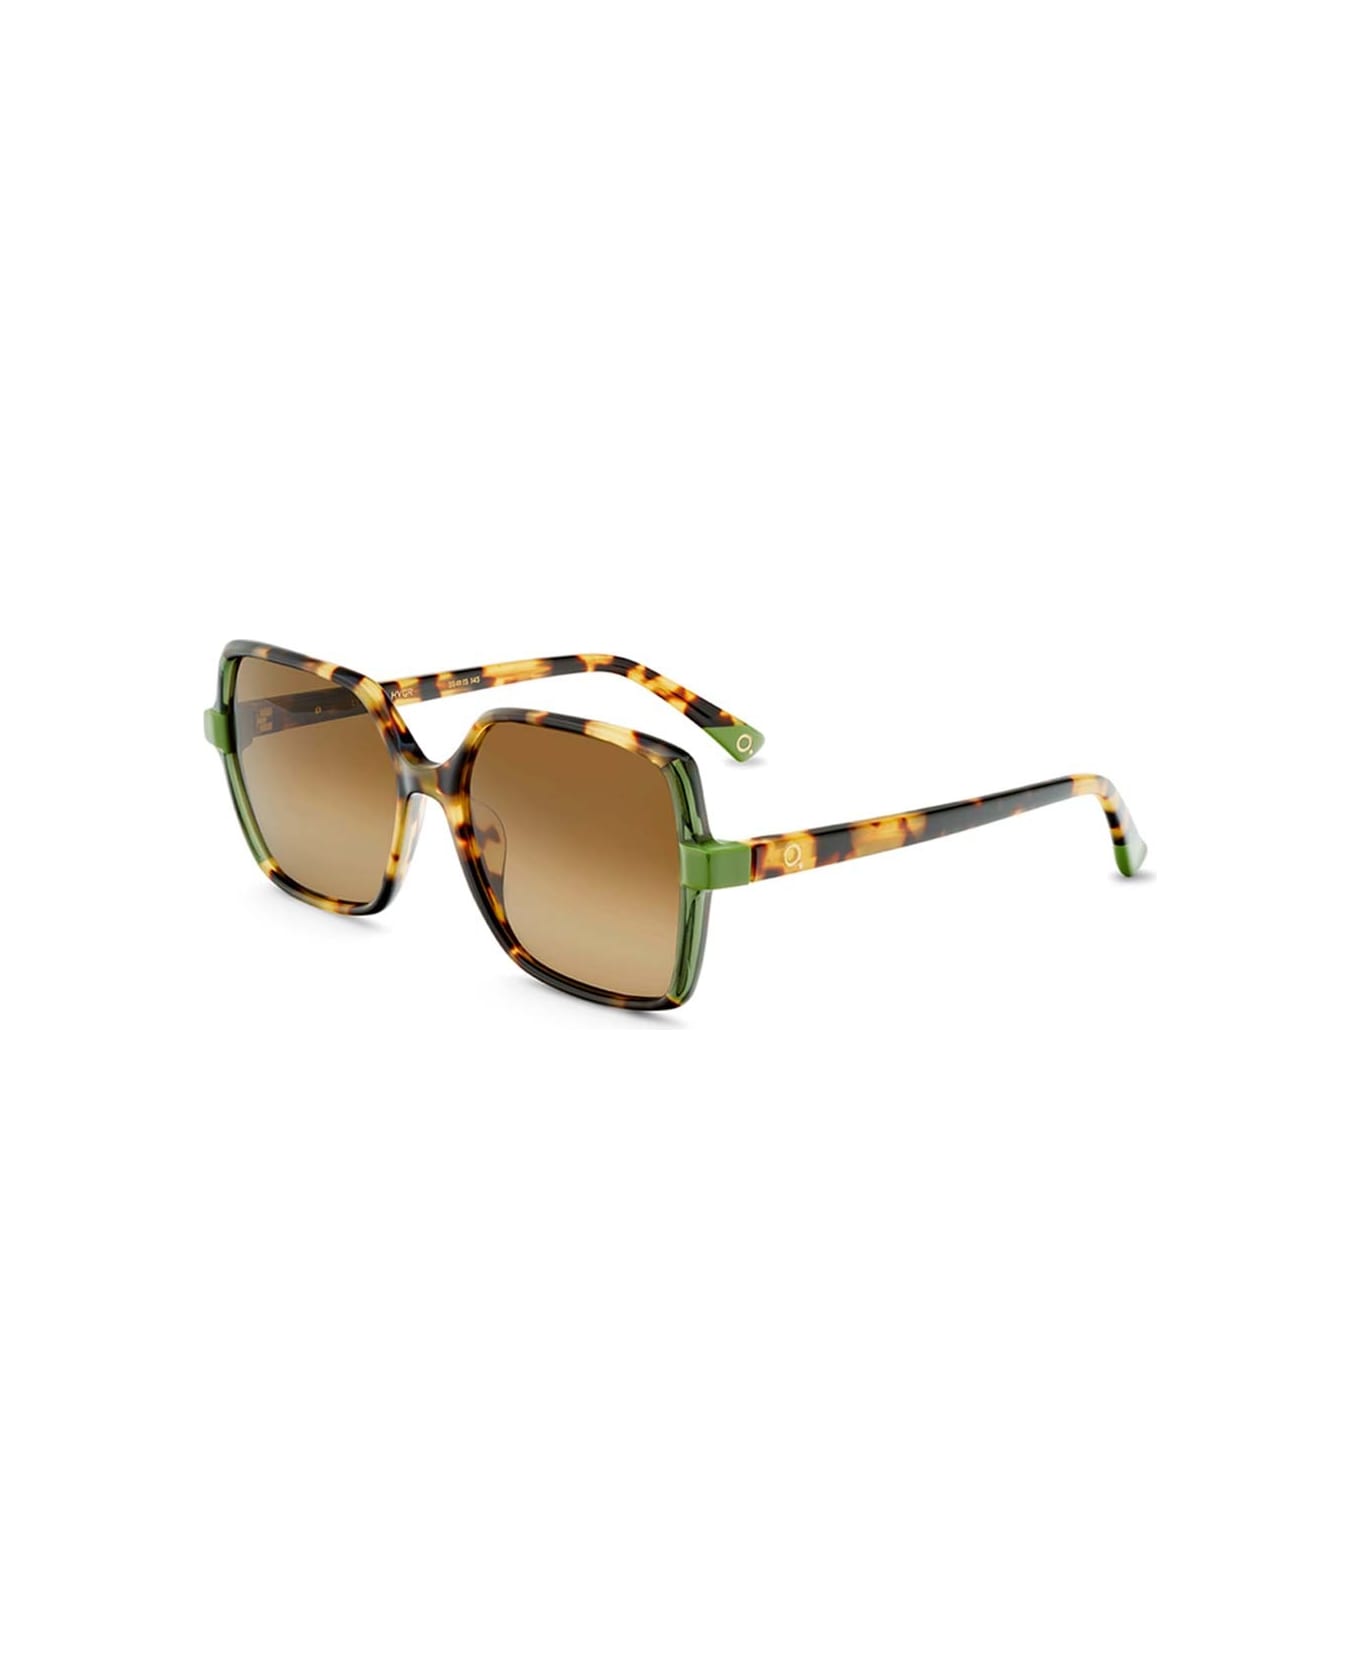 Etnia Barcelona Sunglasses - Multicolor/Marrone